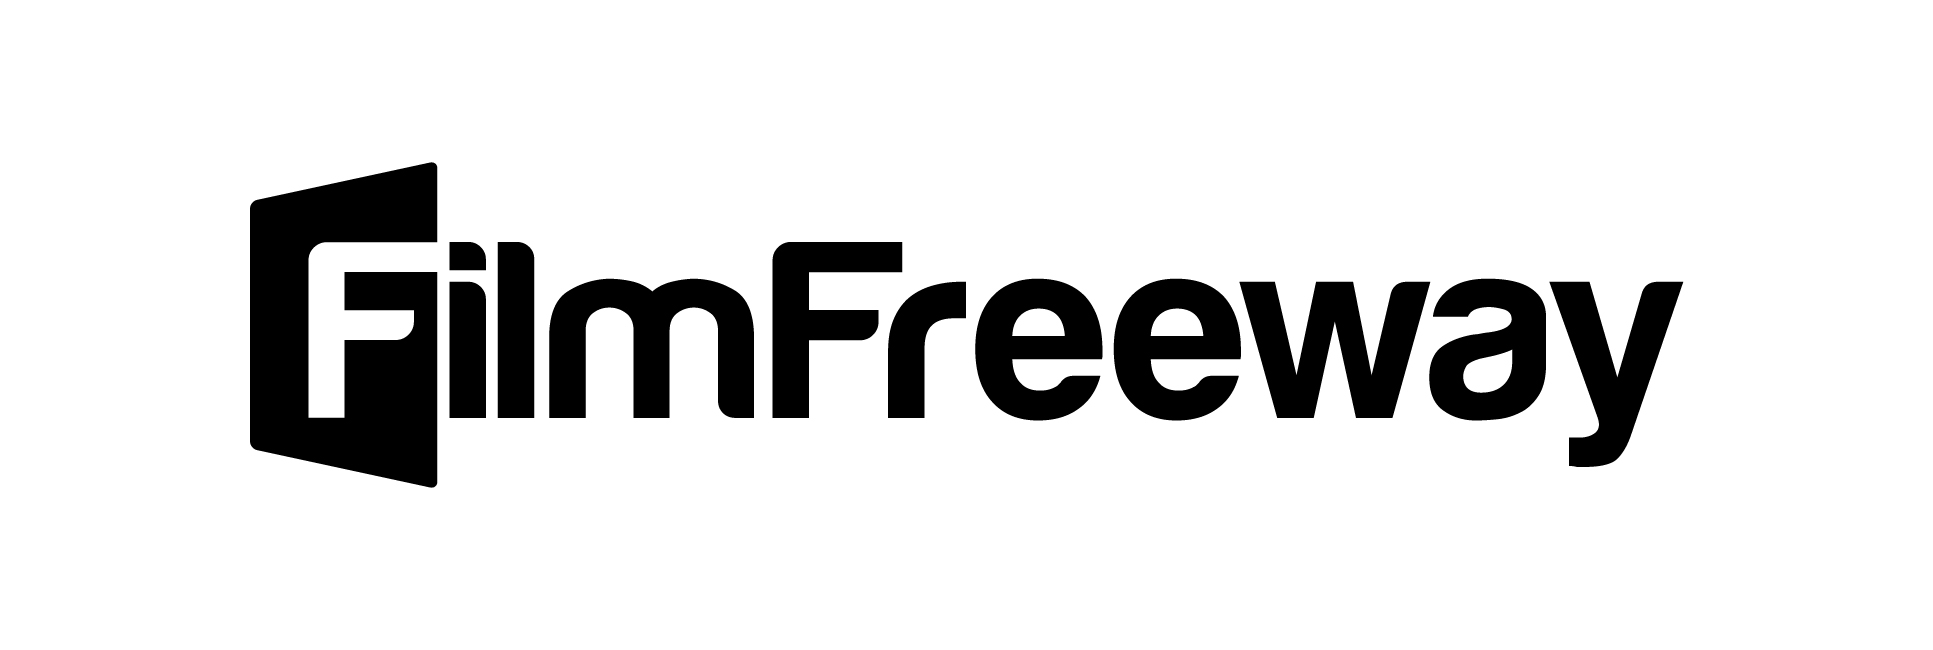 filmfreeway-logo-hires-black